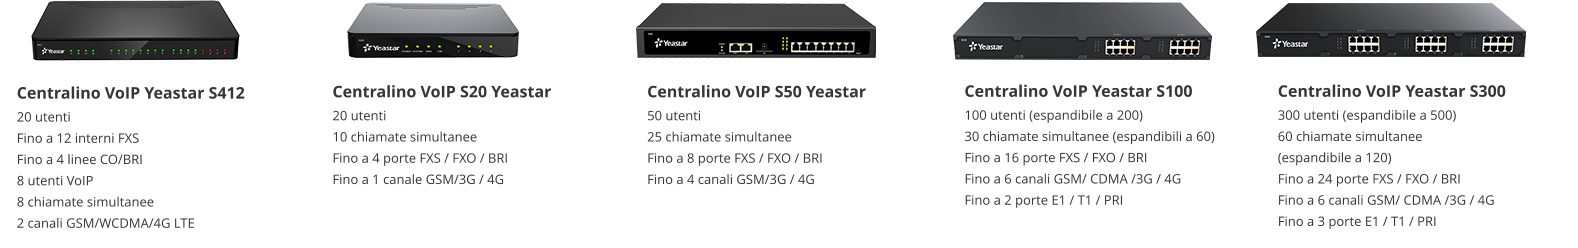 Centralino VoIP S20 Yeastar 20 utenti 10 chiamate simultanee Fino a 4 porte FXS / FXO / BRI Fino a 1 canale GSM/3G / 4G Centralino VoIP S50 Yeastar 50 utenti 25 chiamate simultanee Fino a 8 porte FXS / FXO / BRI Fino a 4 canali GSM/3G / 4G  Centralino VoIP Yeastar S100 100 utenti (espandibile a 200) 30 chiamate simultanee (espandibili a 60) Fino a 16 porte FXS / FXO / BRI Fino a 6 canali GSM/ CDMA /3G / 4G Fino a 2 porte E1 / T1 / PRI Centralino VoIP Yeastar S300 300 utenti (espandibile a 500) 60 chiamate simultanee (espandibile a 120) Fino a 24 porte FXS / FXO / BRI Fino a 6 canali GSM/ CDMA /3G / 4G Fino a 3 porte E1 / T1 / PRI Centralino VoIP Yeastar S412 20 utenti Fino a 12 interni FXS Fino a 4 linee CO/BRI 8 utenti VoIP 8 chiamate simultanee 2 canali GSM/WCDMA/4G LTE